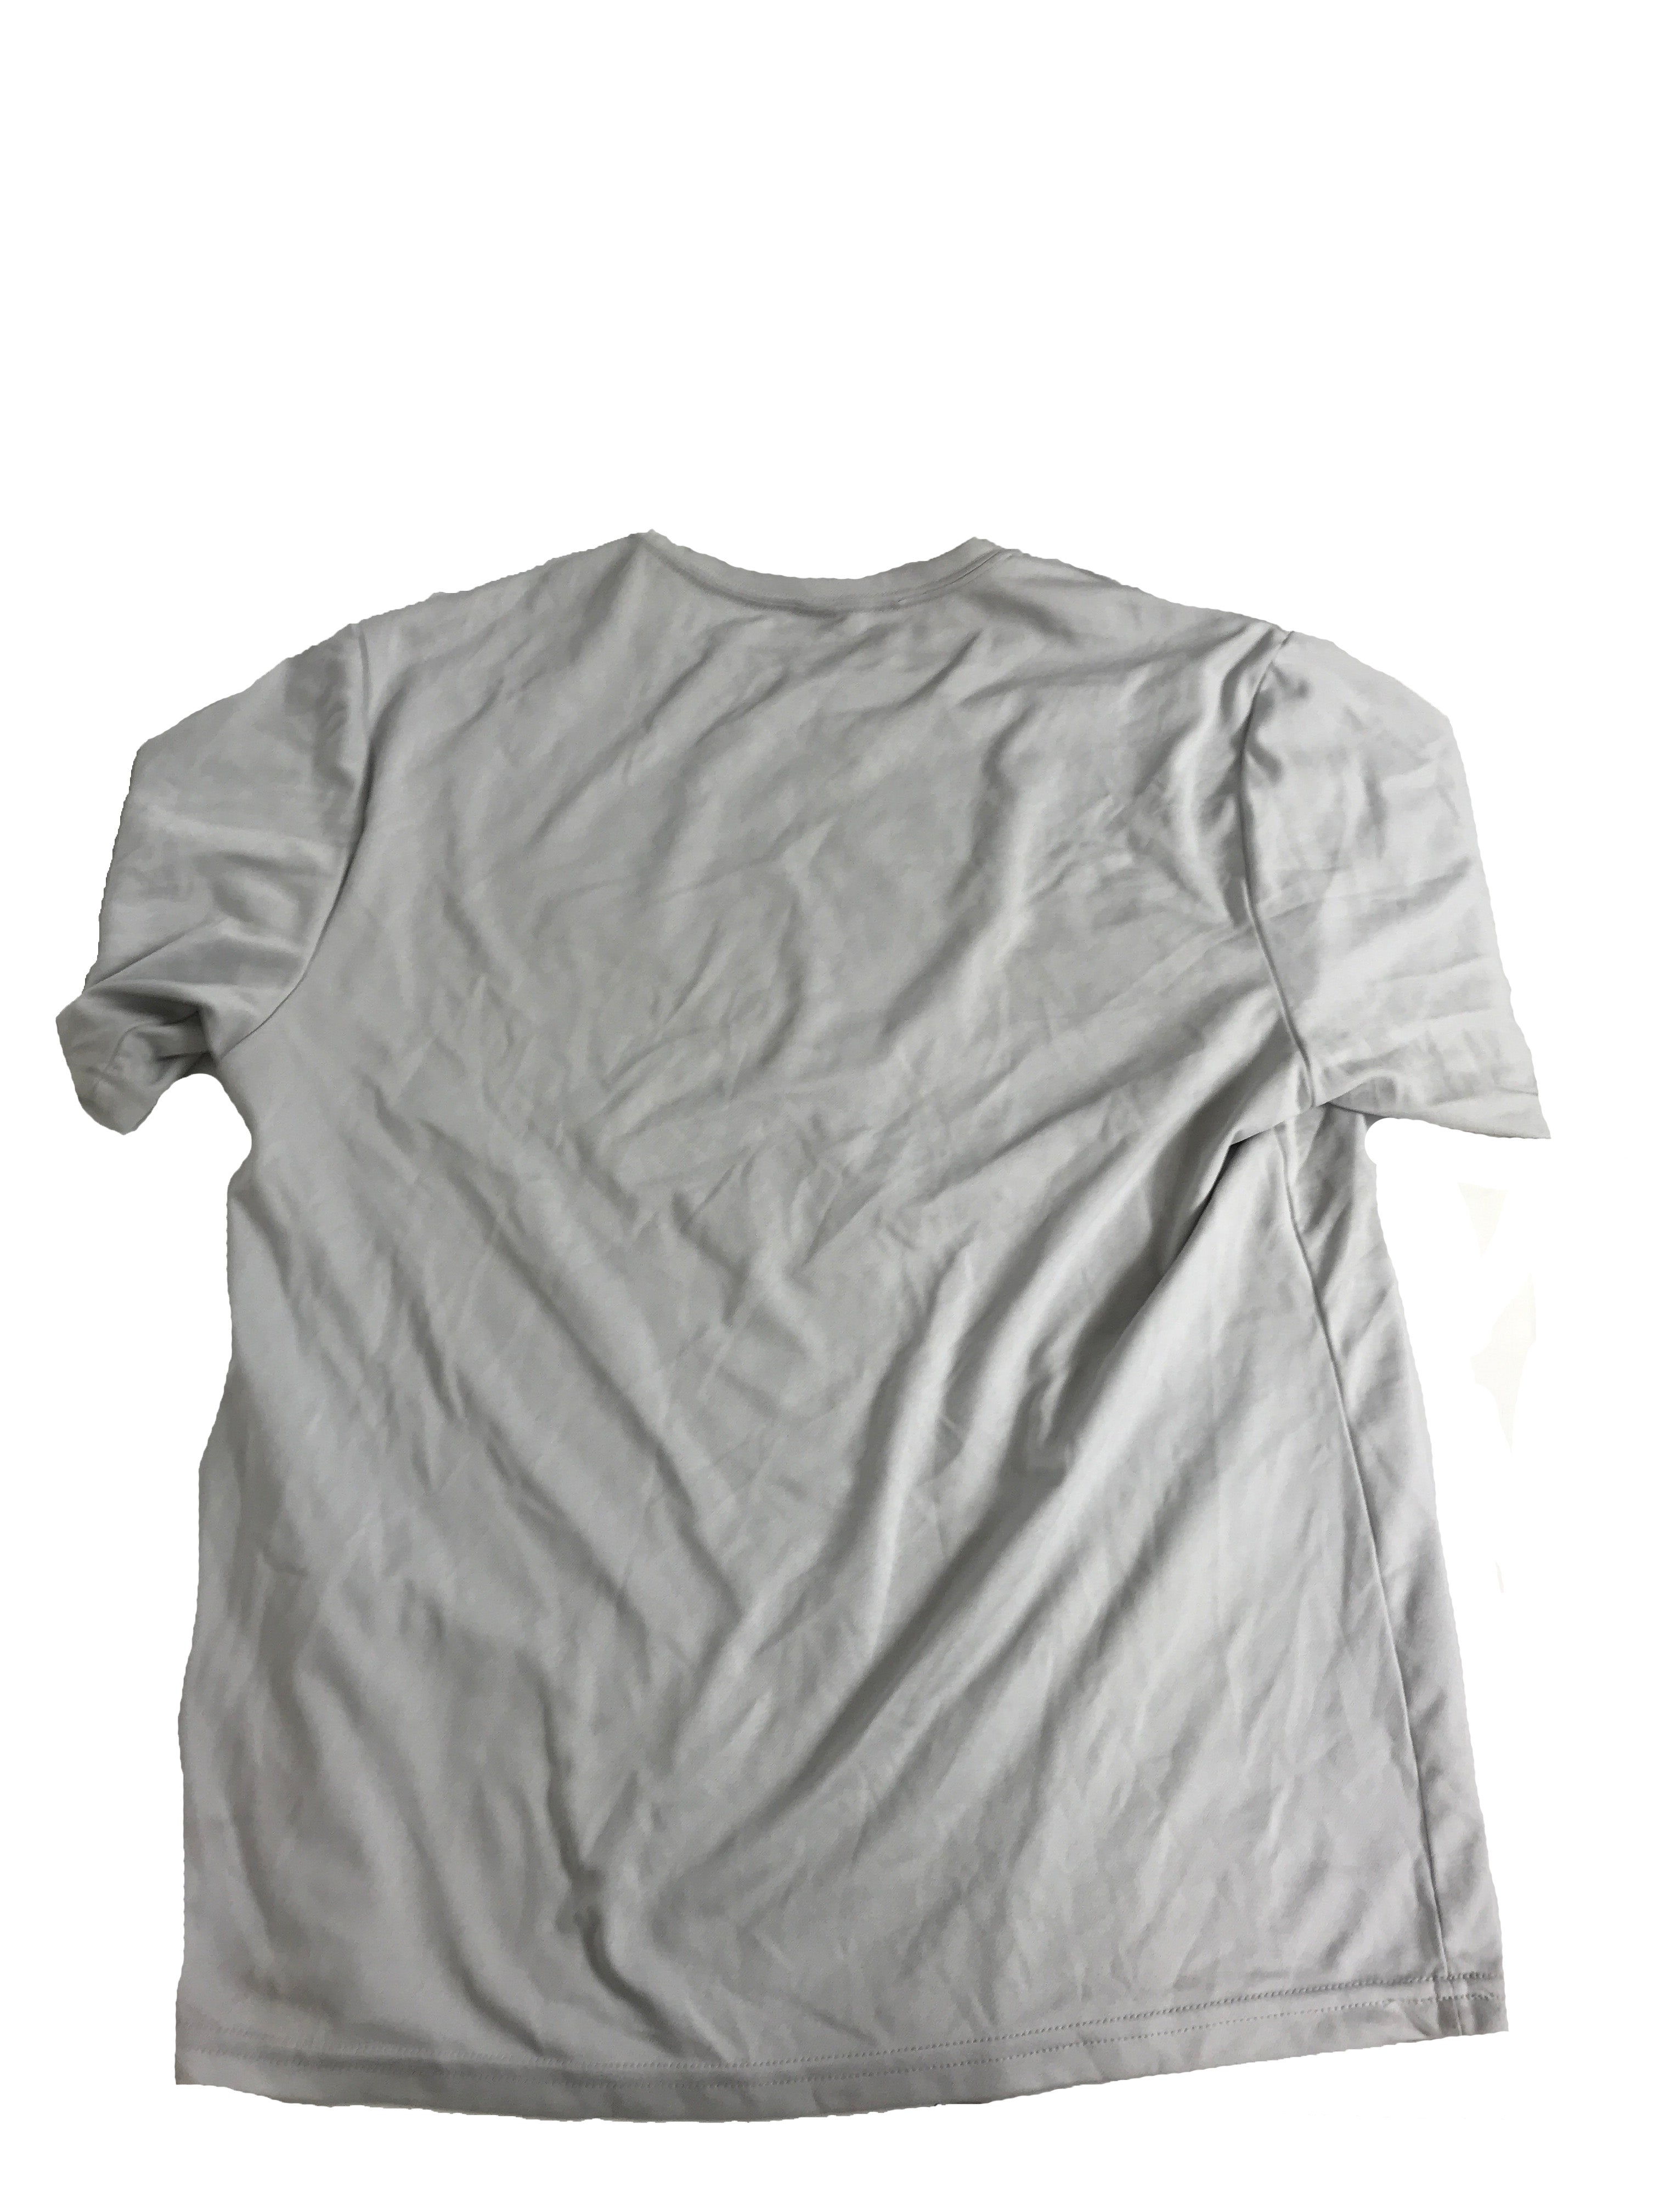 Gray Michigan State Football T-Shirt Unisex Size Large